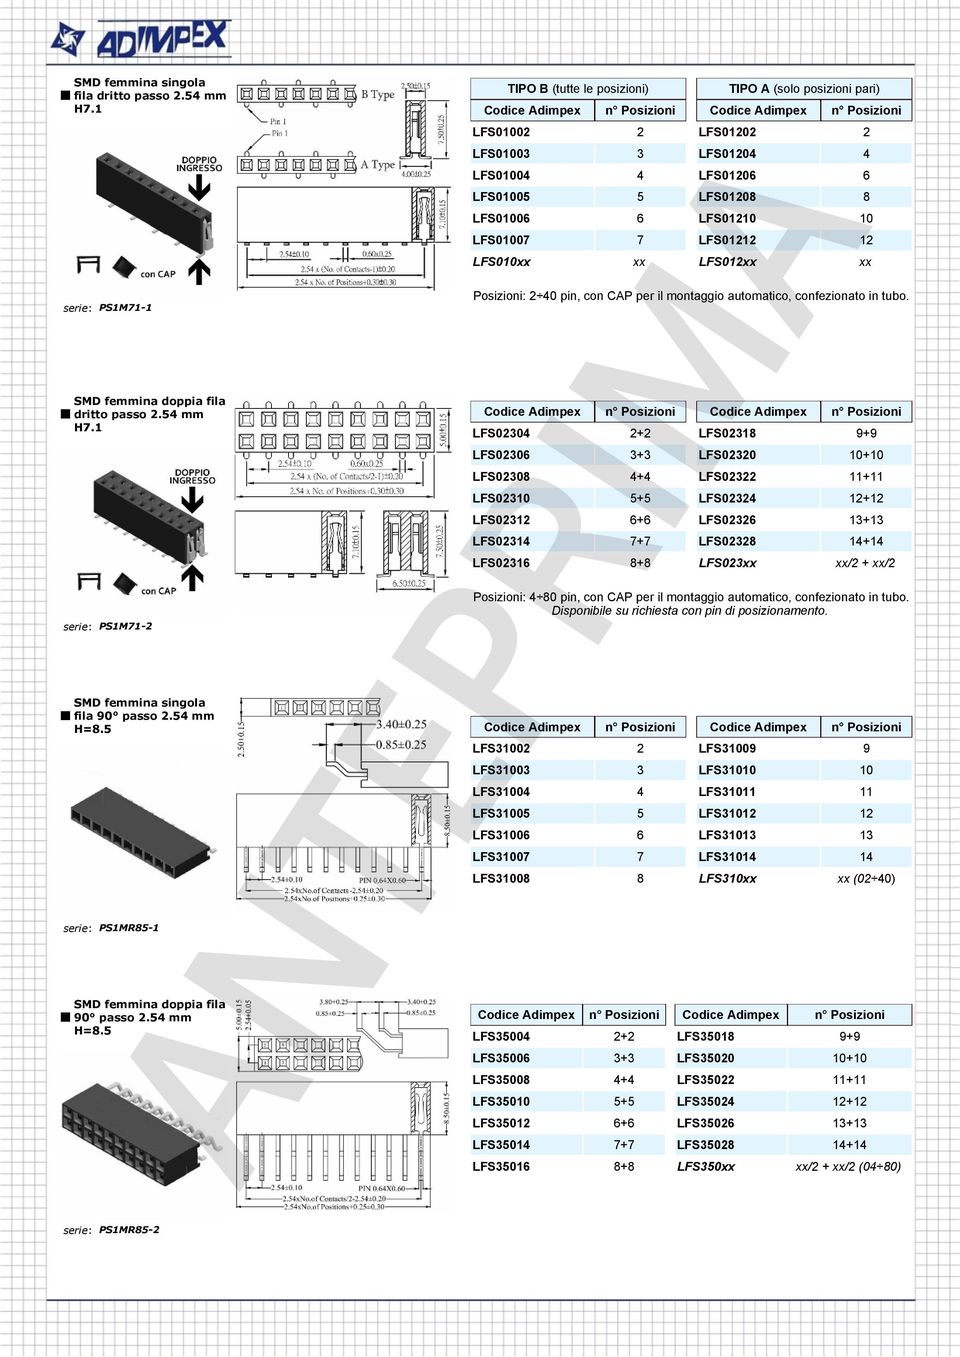 LFS01212 12 LFS010xx xx LFS012xx xx Posizioni: 2 40 pin, con CAP per il montaggio automatico, confezionato in tubo.